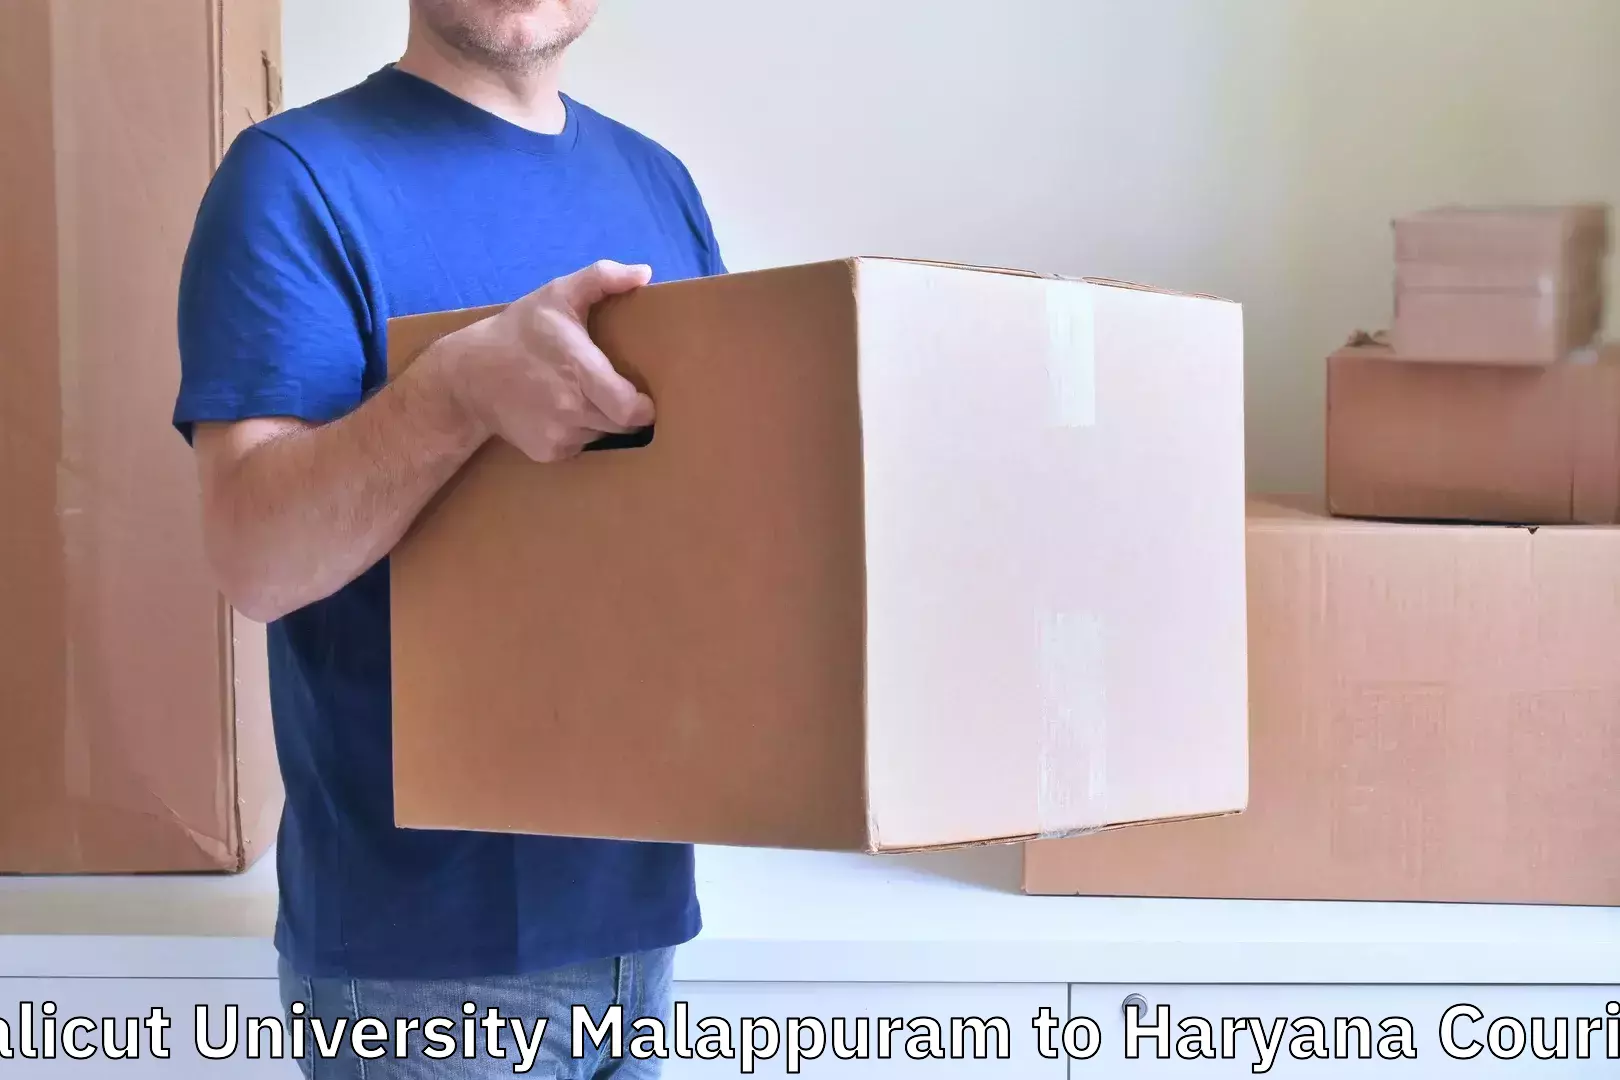 Luggage shipping estimate Calicut University Malappuram to Samalkha